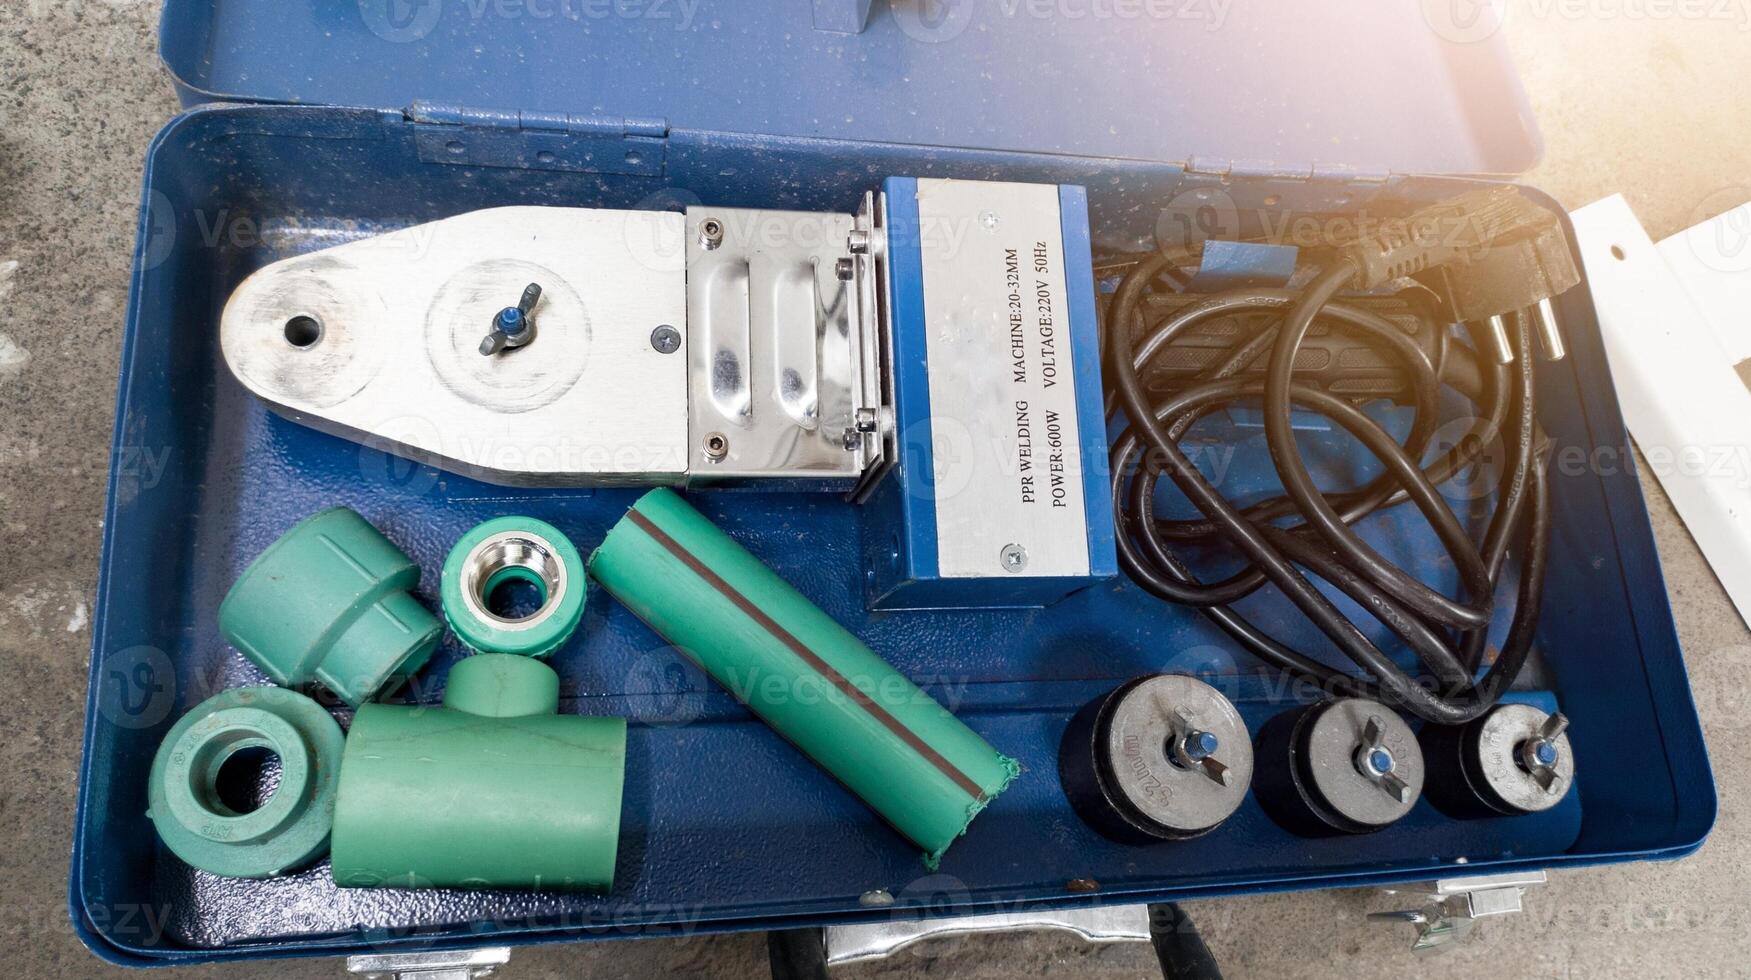 fontanero soldadura herramientas conjunto para ppr tubo conexion.industrial fontanero caliente agua tipo conexión. foto